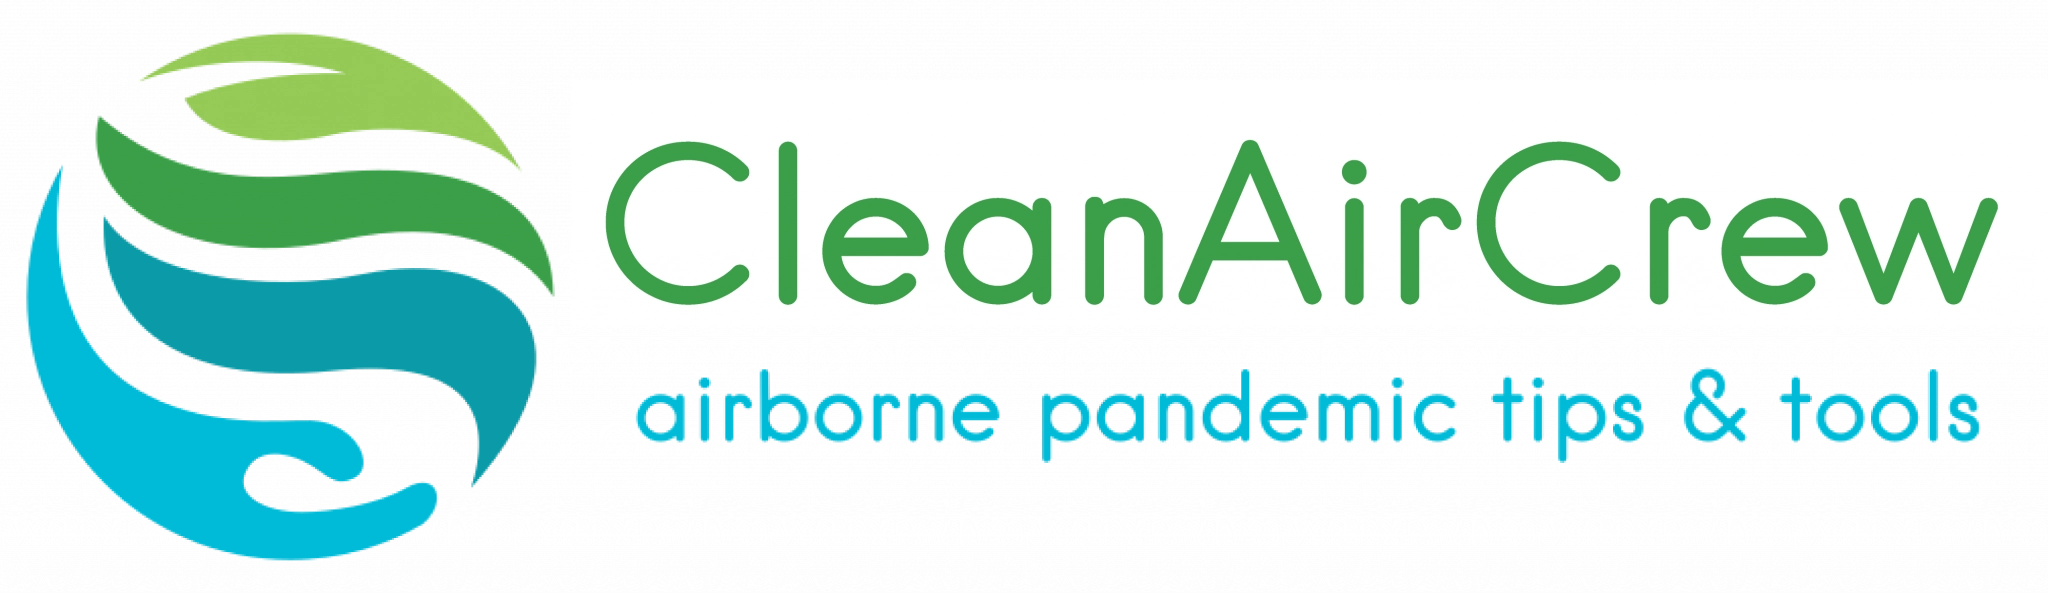 Clean Air Crew website logo